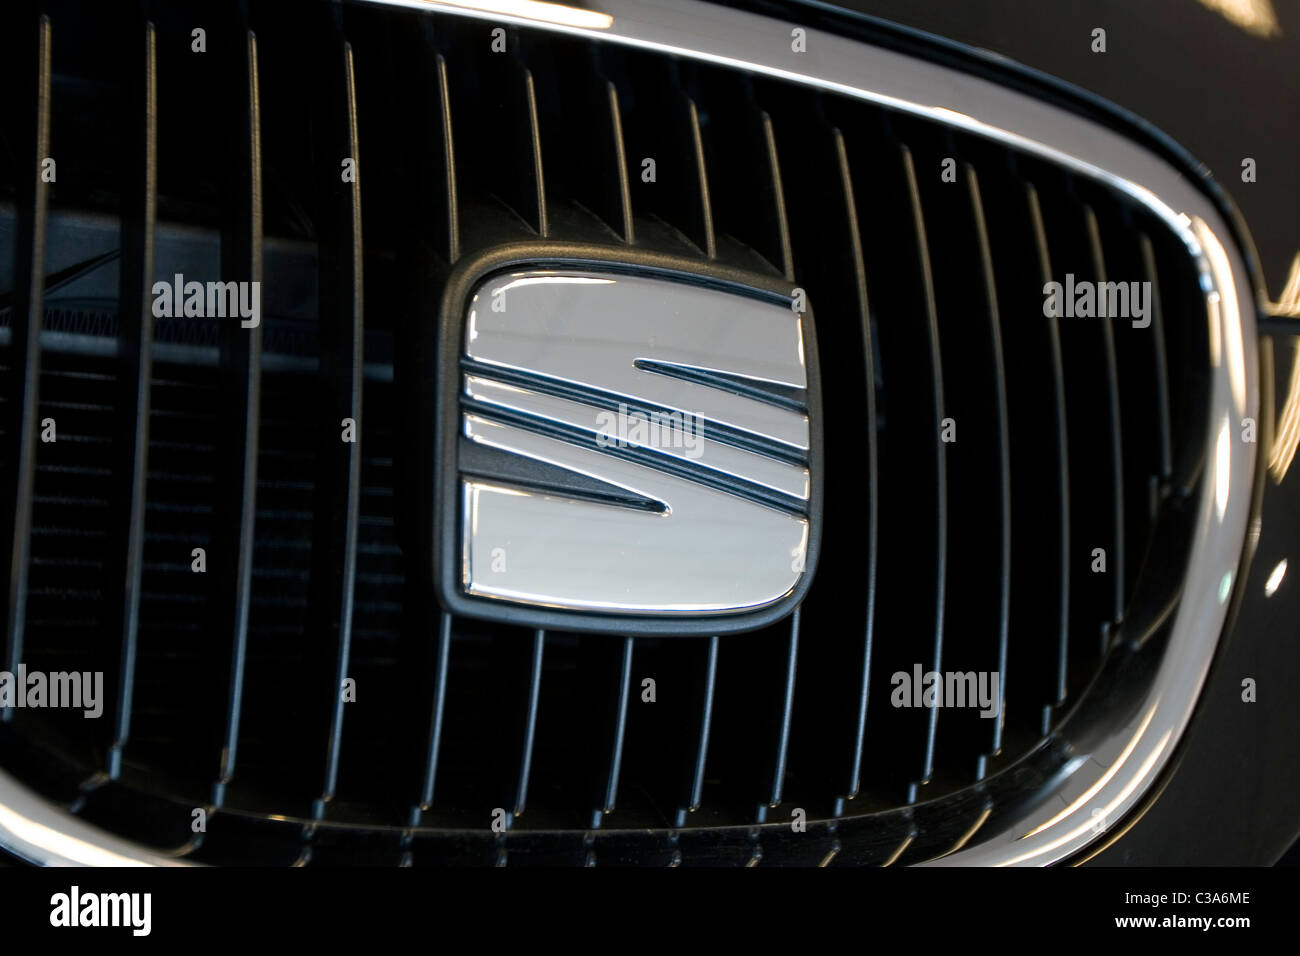 La sede emblema che adorna la parte anteriore delle loro vetture Foto Stock